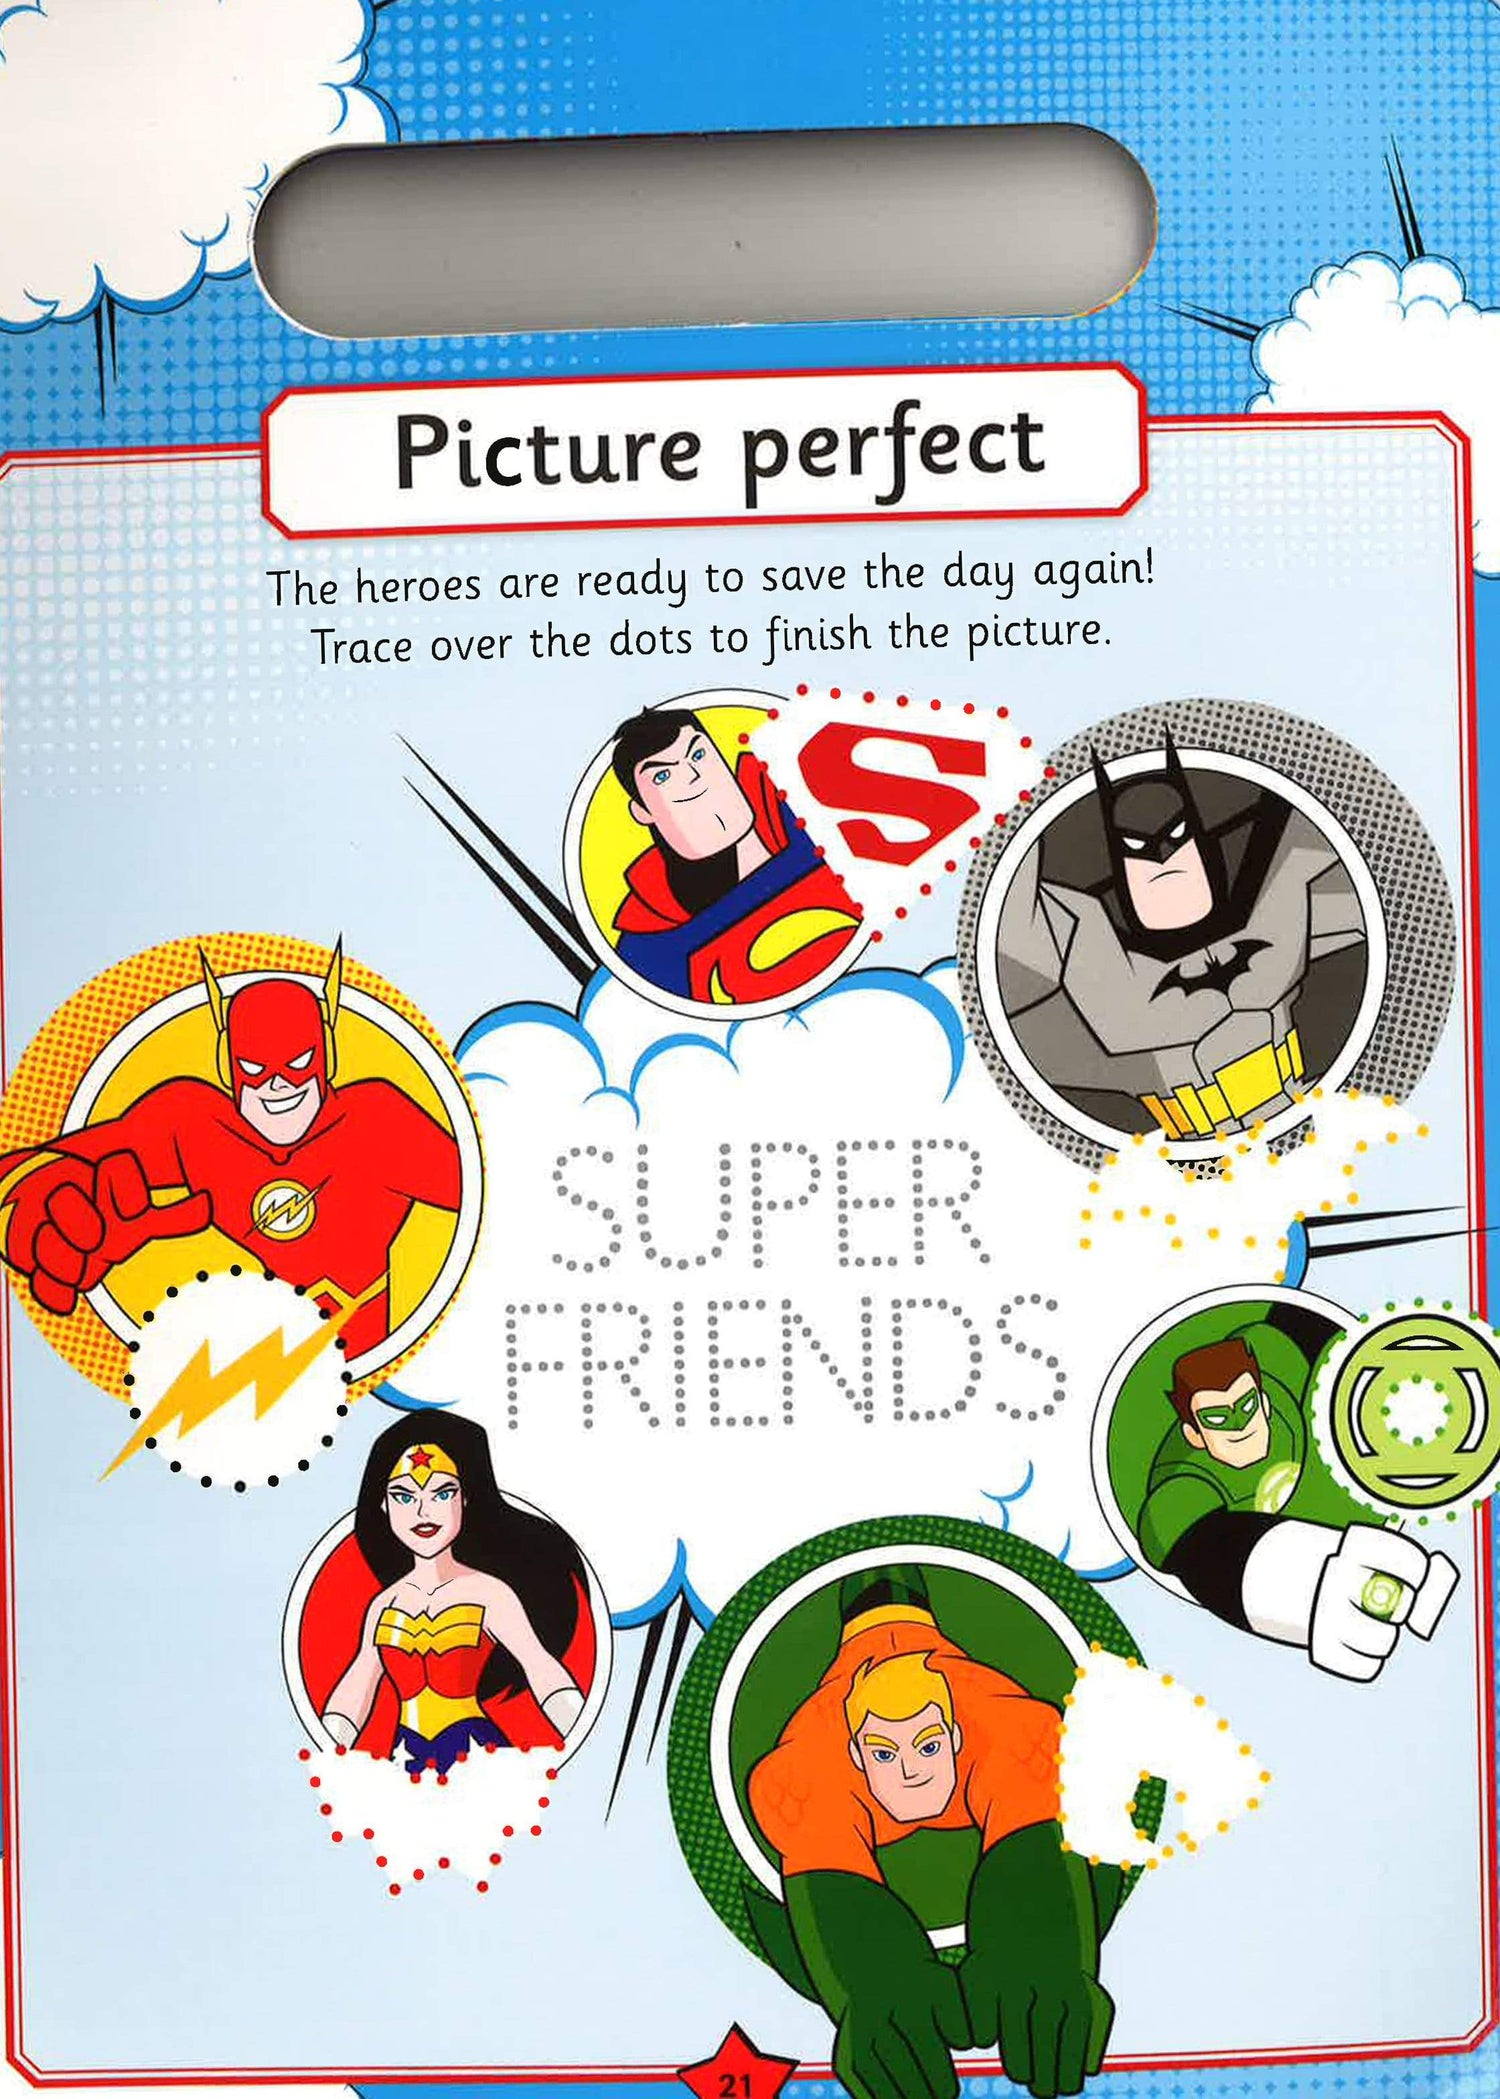 DC Super Friends Wipe-Clean Activity Book: Write, Wipe and Write Again!